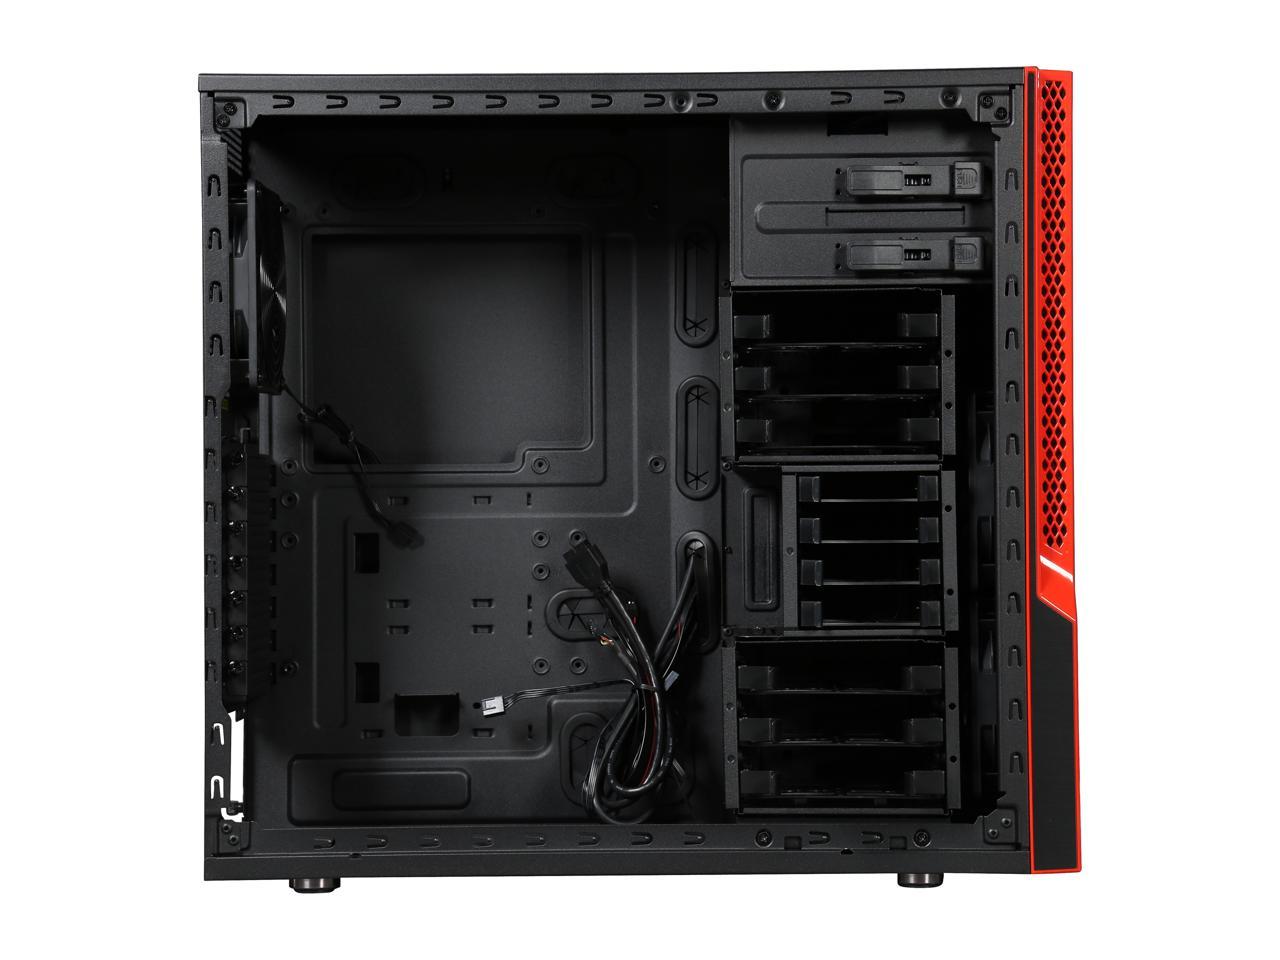 SUPERMICRO CSE-GS5B-000R Black / Red Computer Case - Newegg.com